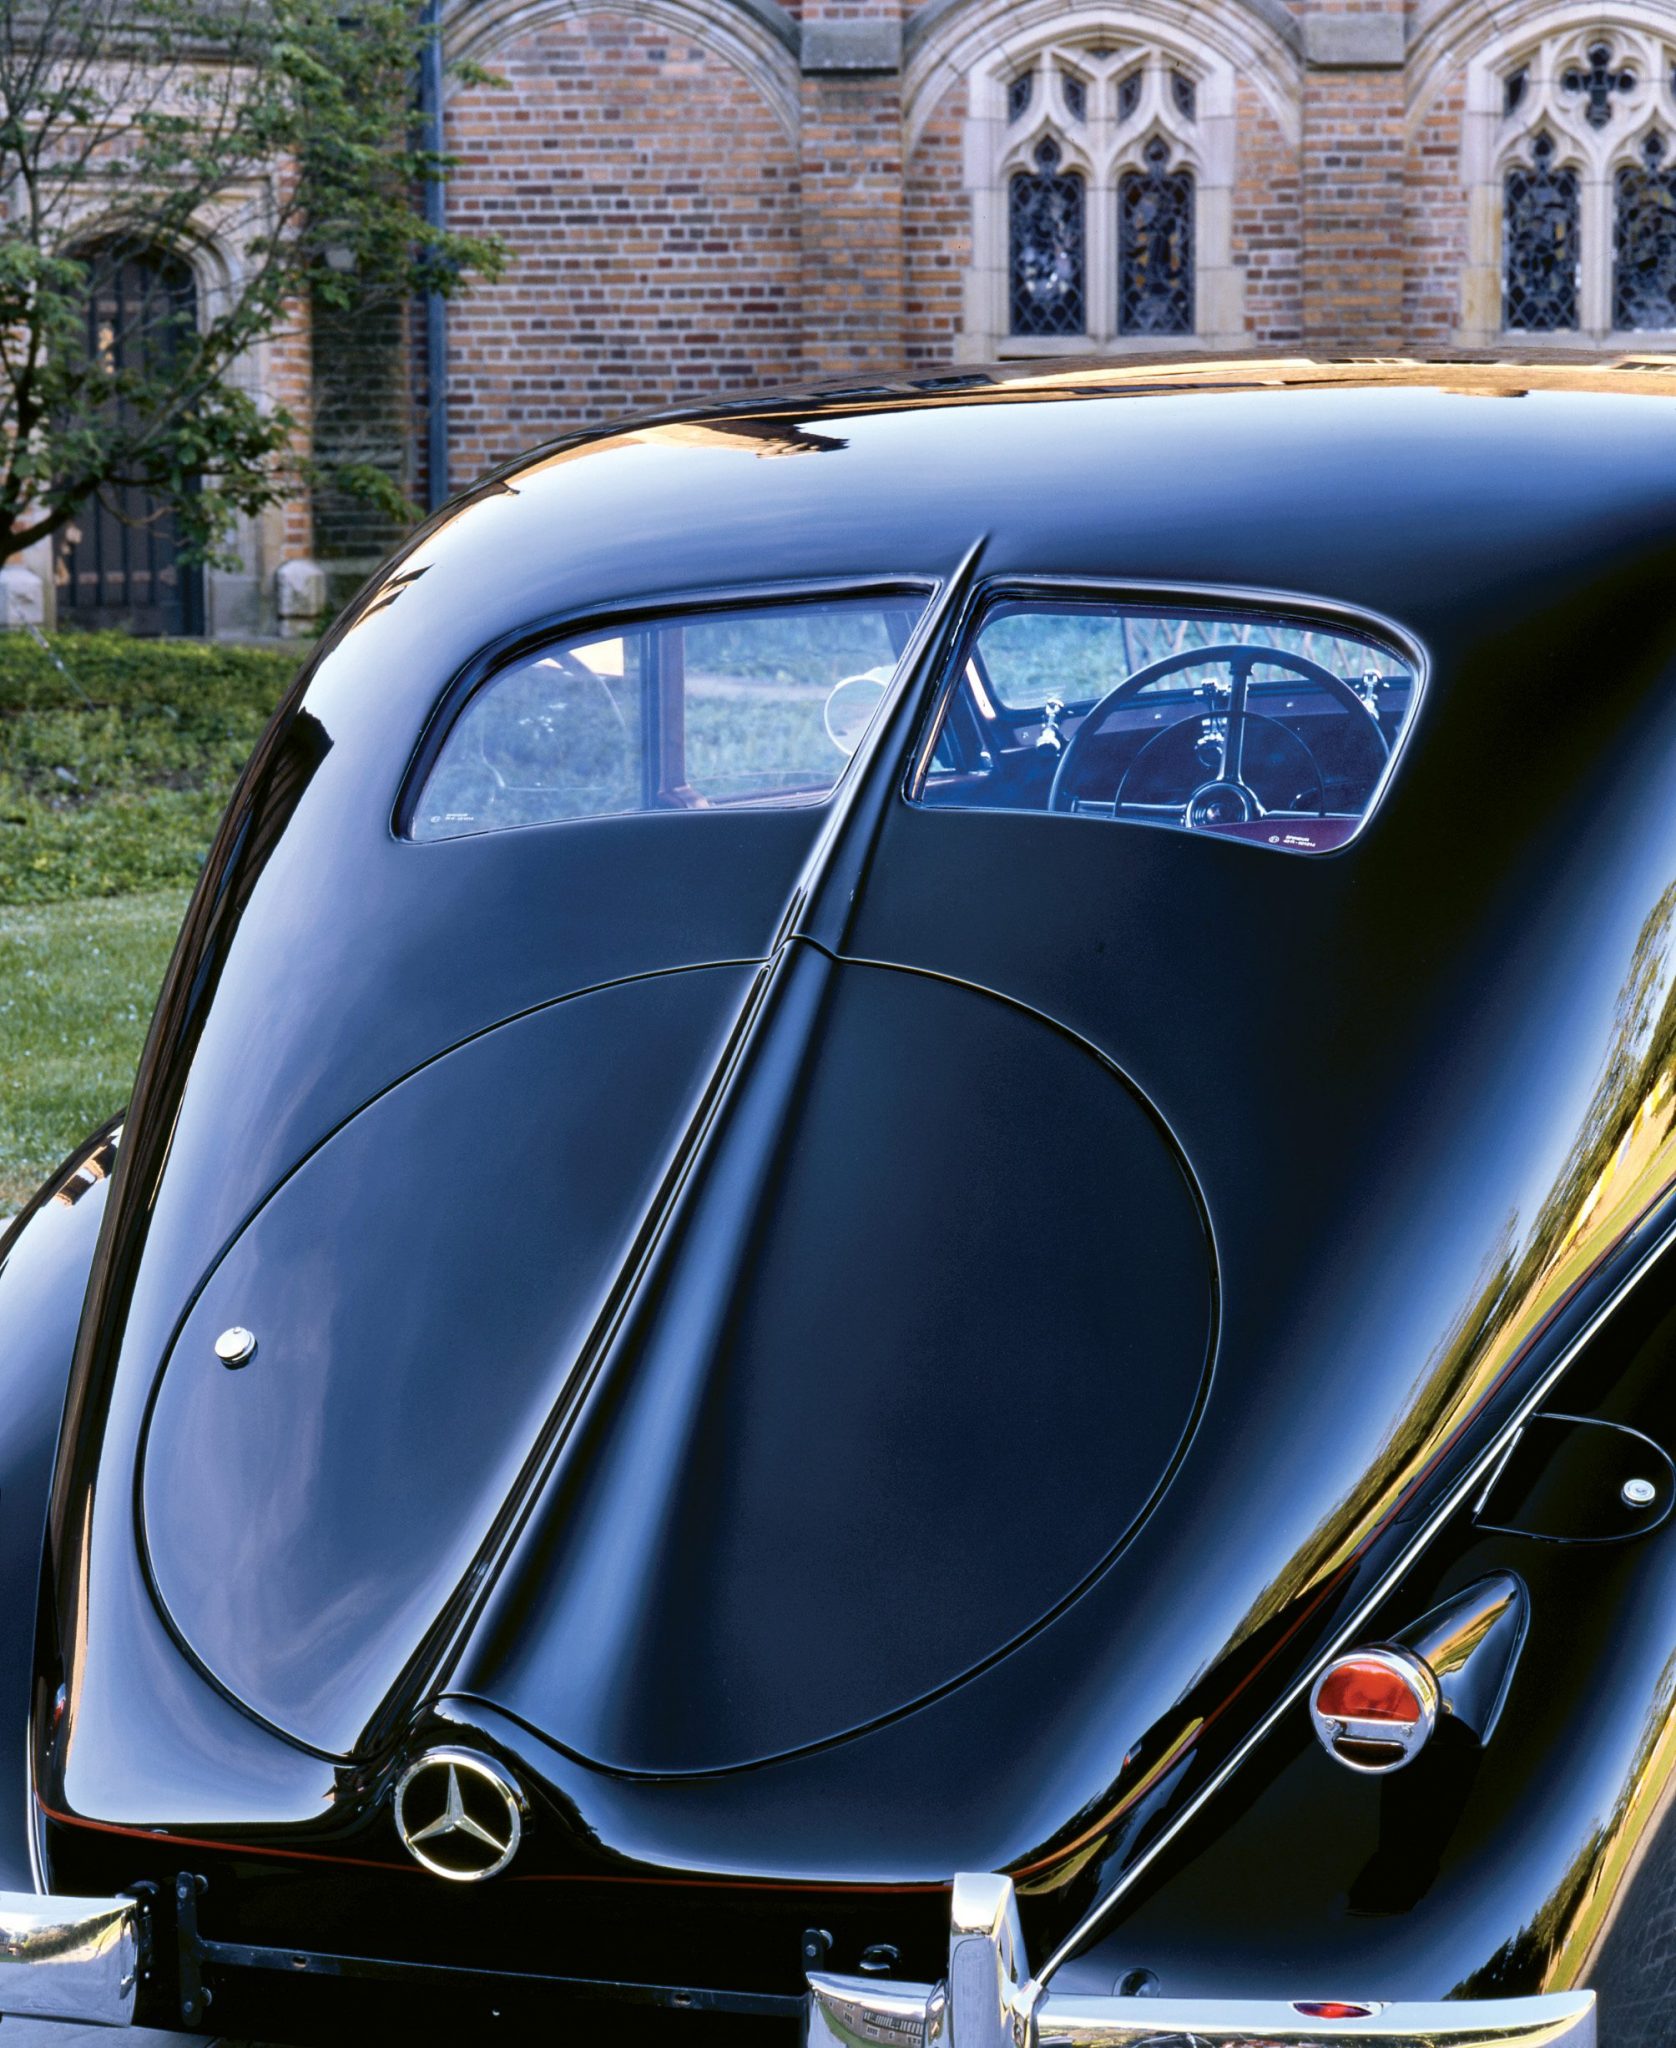 https://www.heacockclassic.com/wp-content/uploads/1939-Mecedes-Benz-320-Rear.jpg